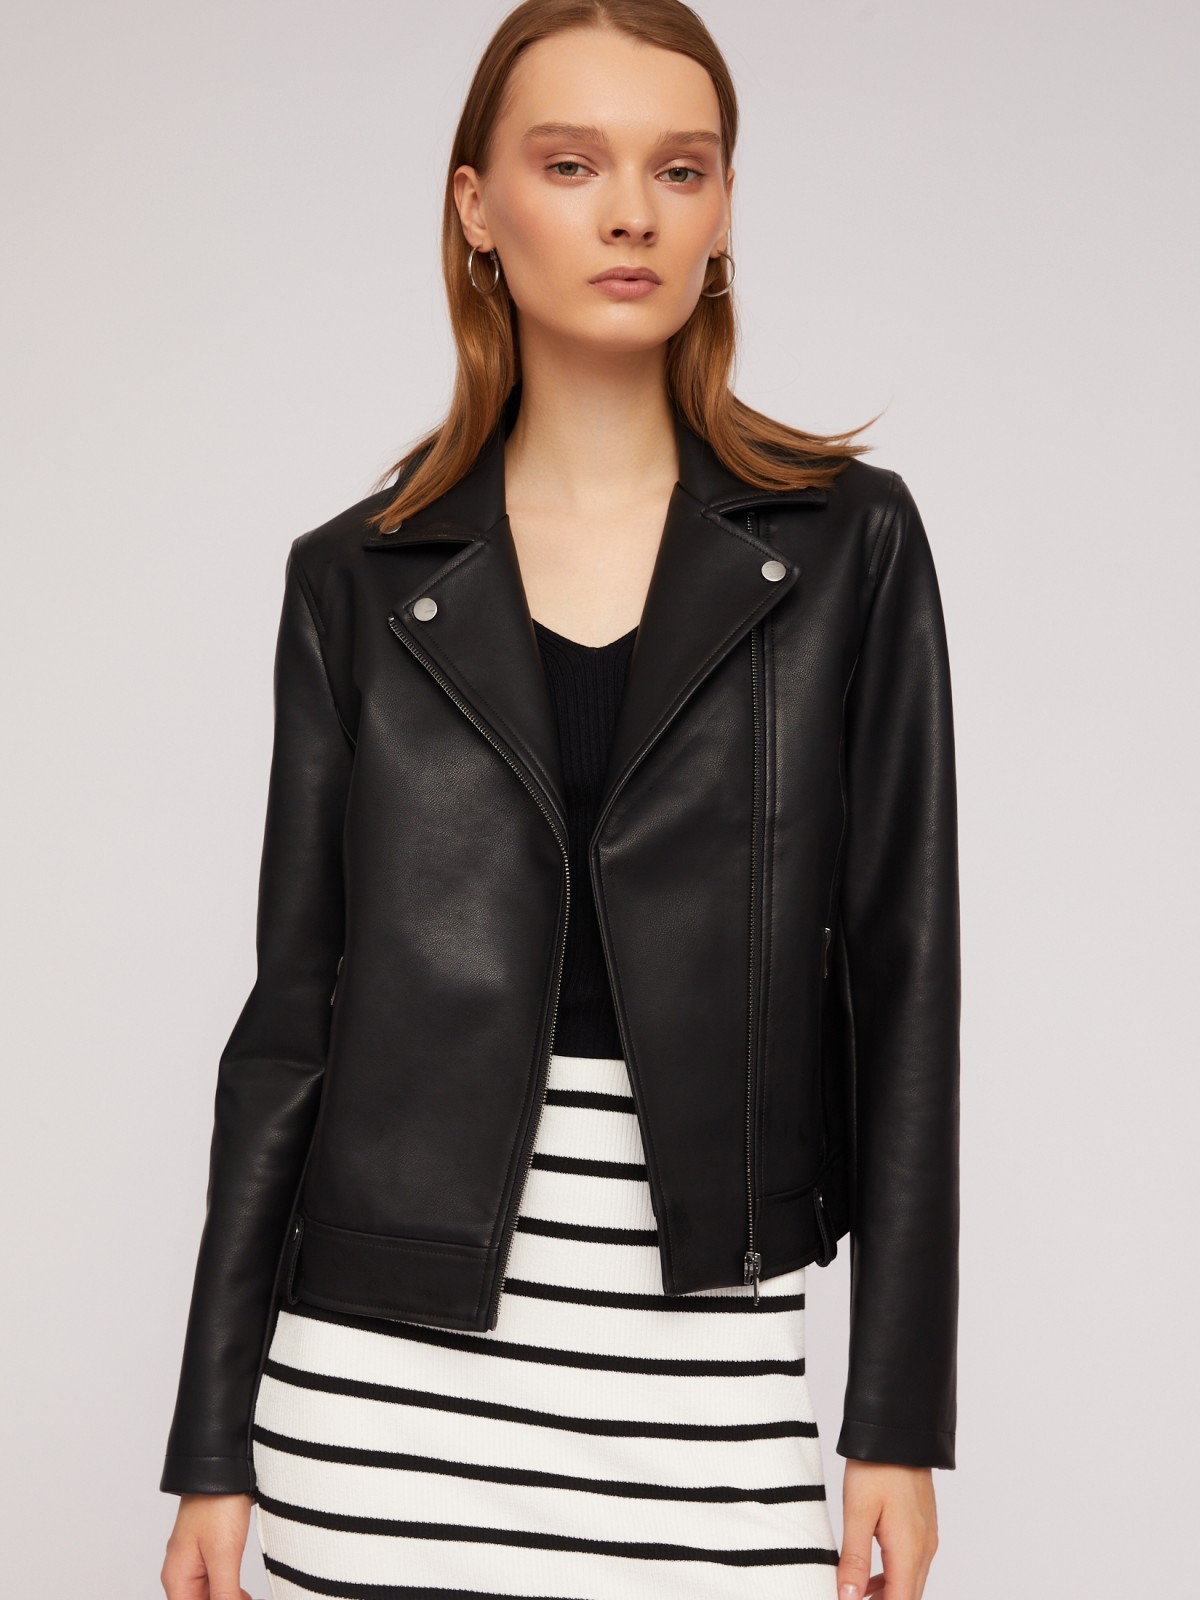 Кожаная куртка-косуха из экокожи zolla 024215602034, цвет черный, размер XS - фото 2